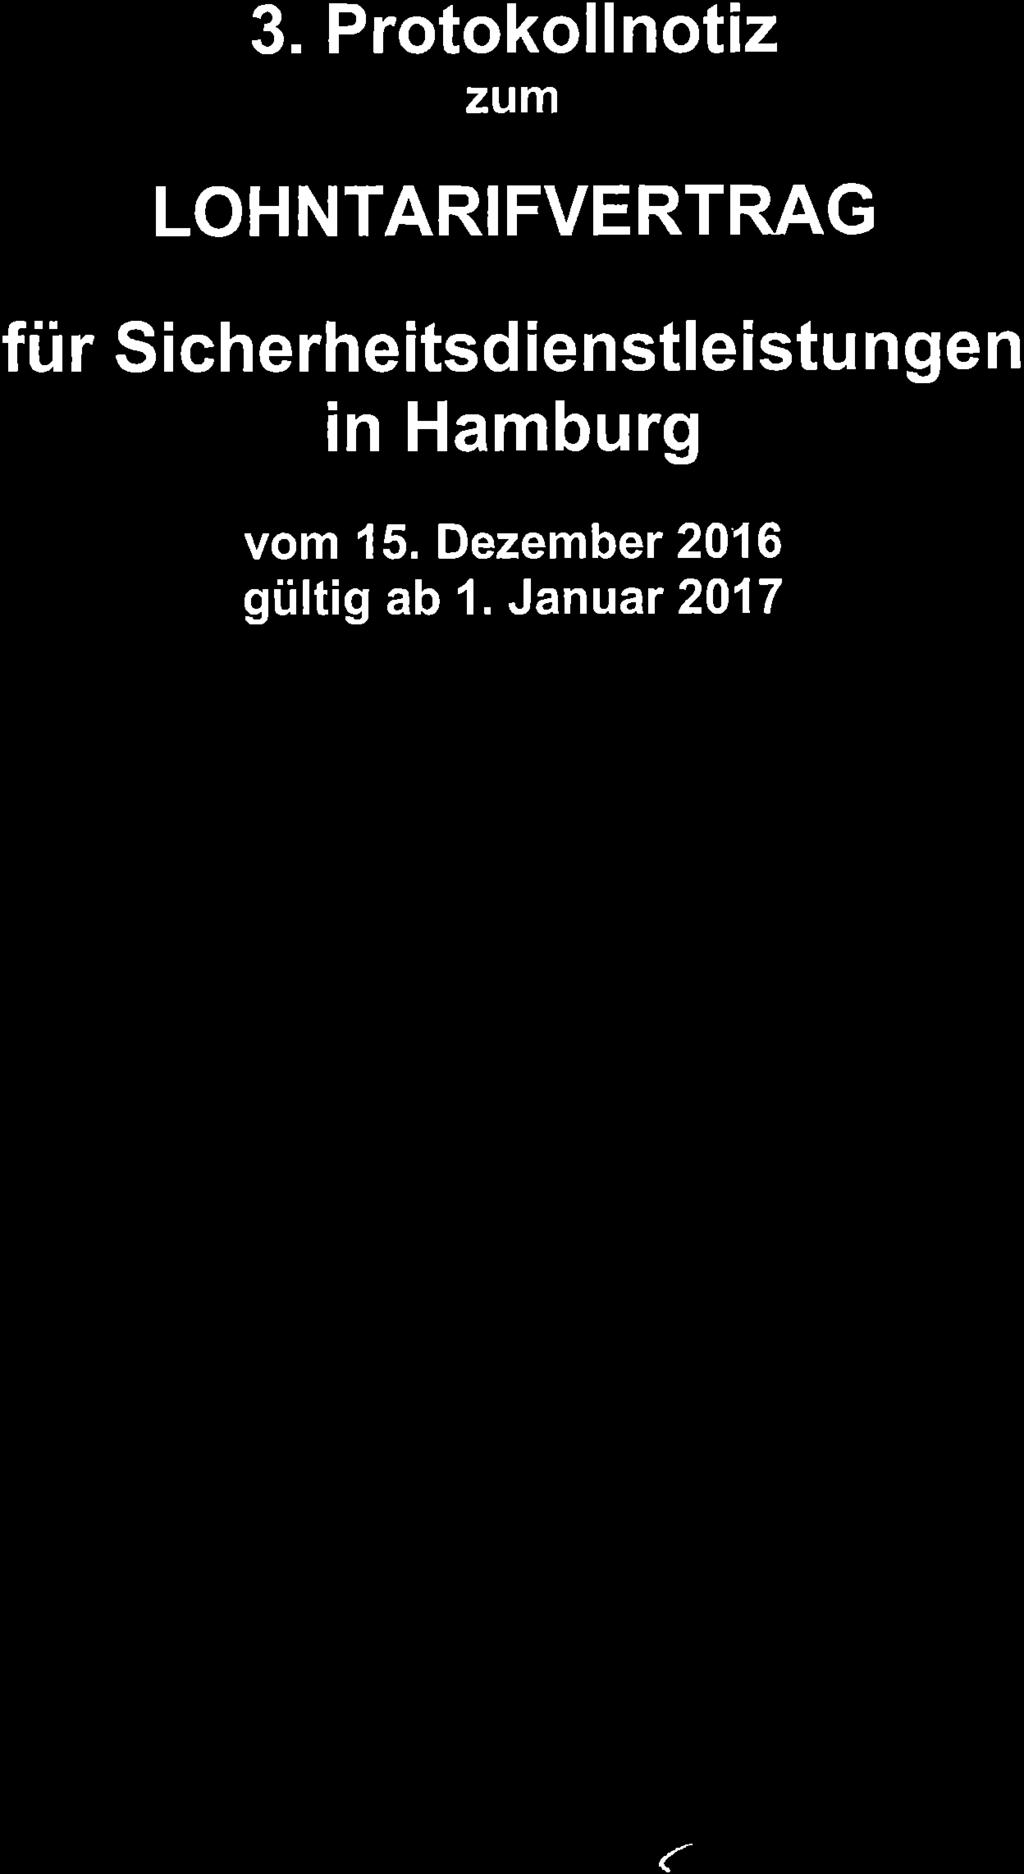 3. Protokollnotiz zum LOHNTARIFVERTRAG für Sicherheitsdienstleistungen in Hamburg vom 15. Dezember 2016 gültig 1.